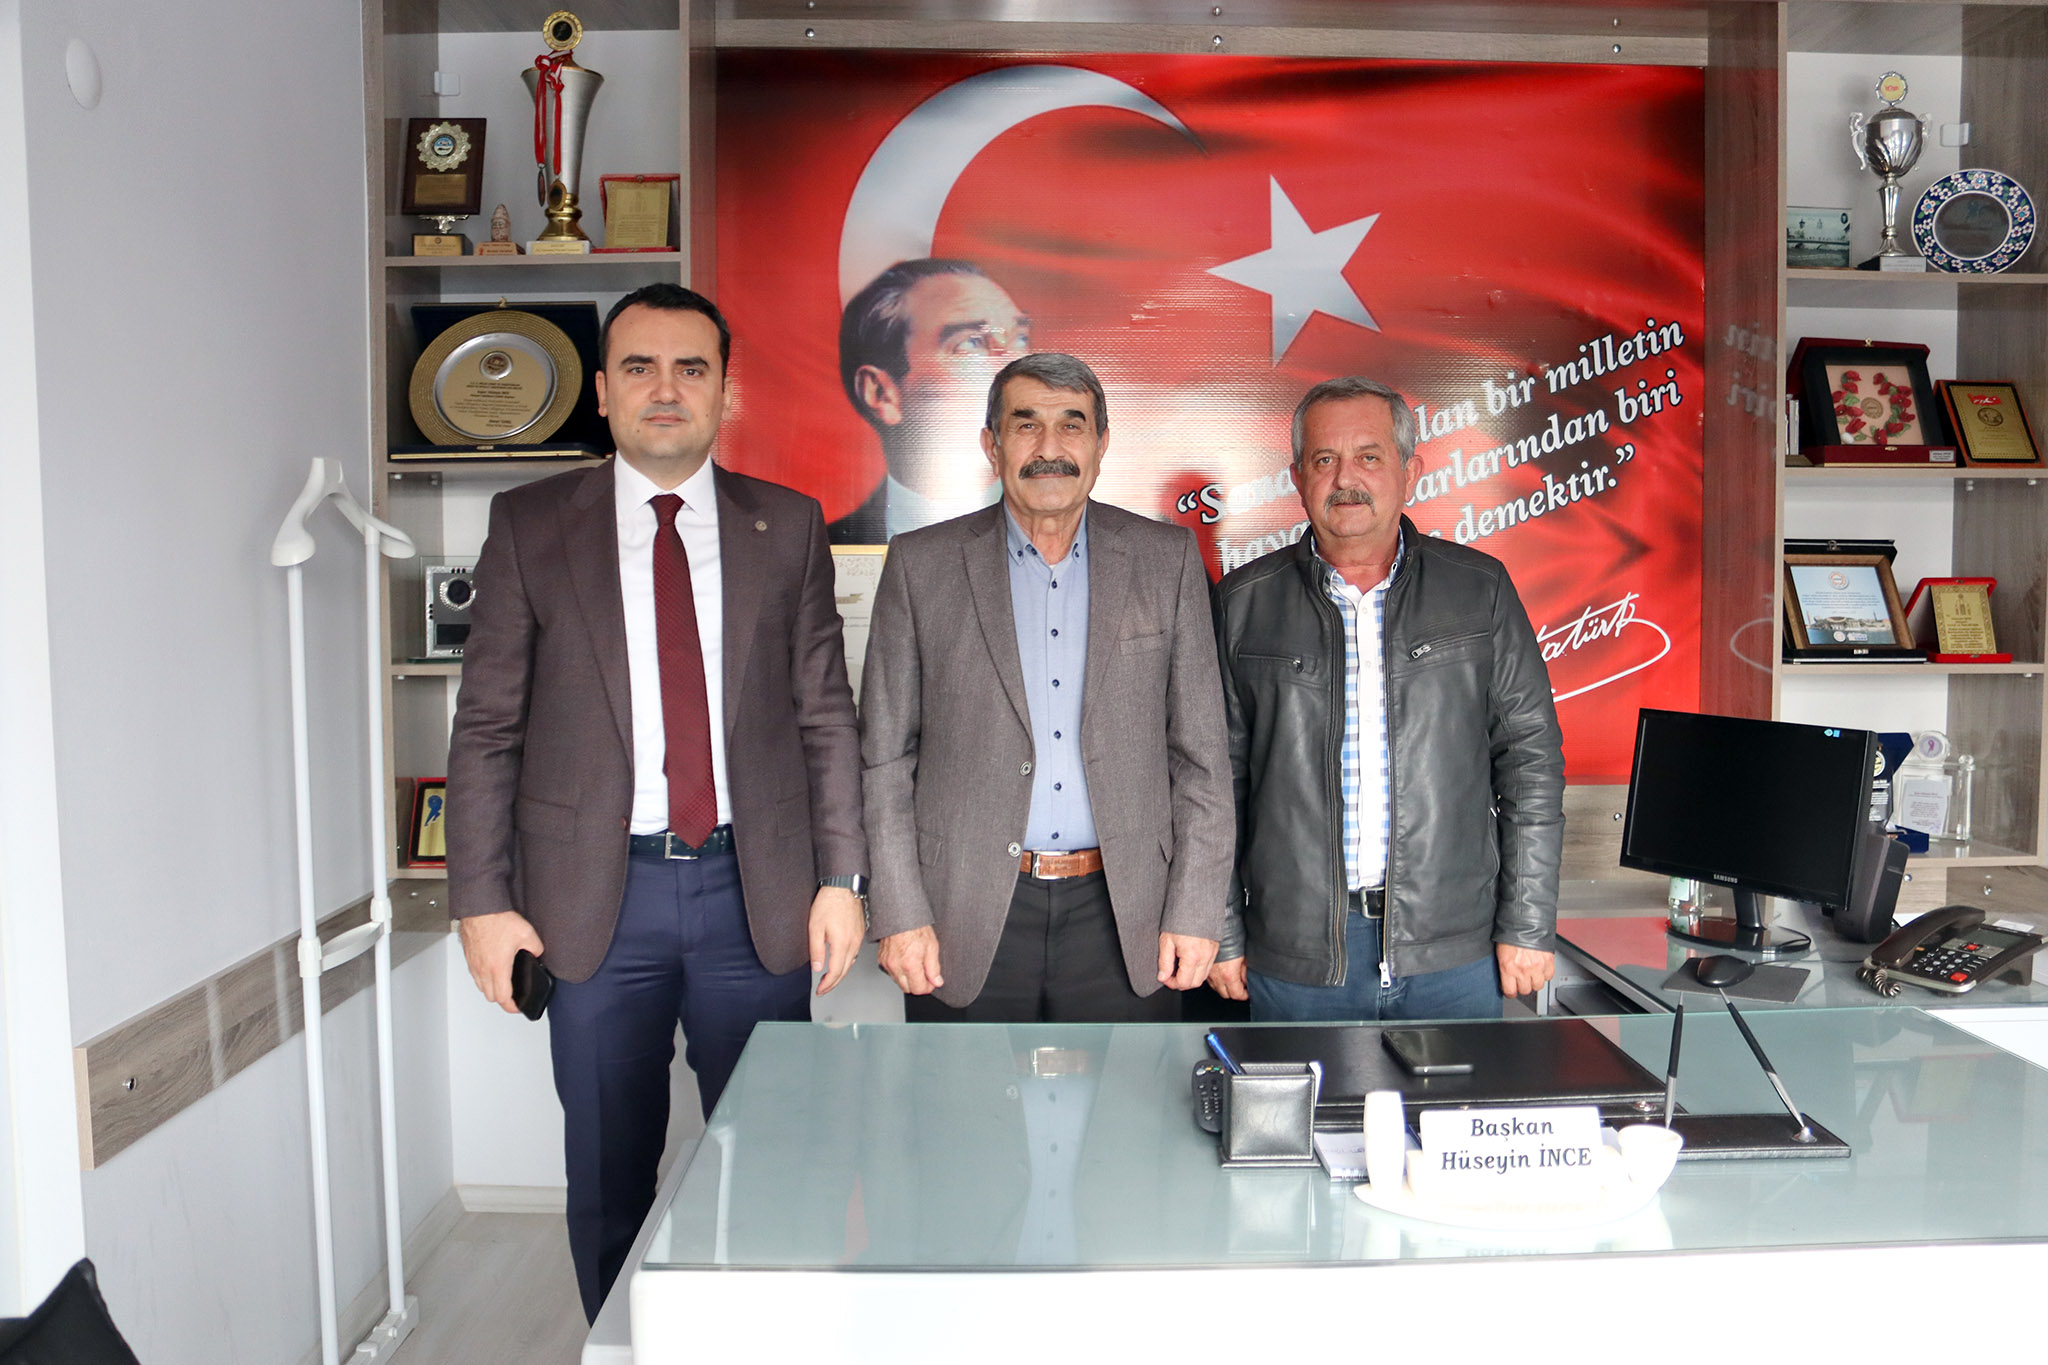 Hasyurt Kaymakamı Musa Kazım ÇELİK, Esnaf ve Sanatkârlar Kredi Kooperatifi Başkanı ile görüştü.